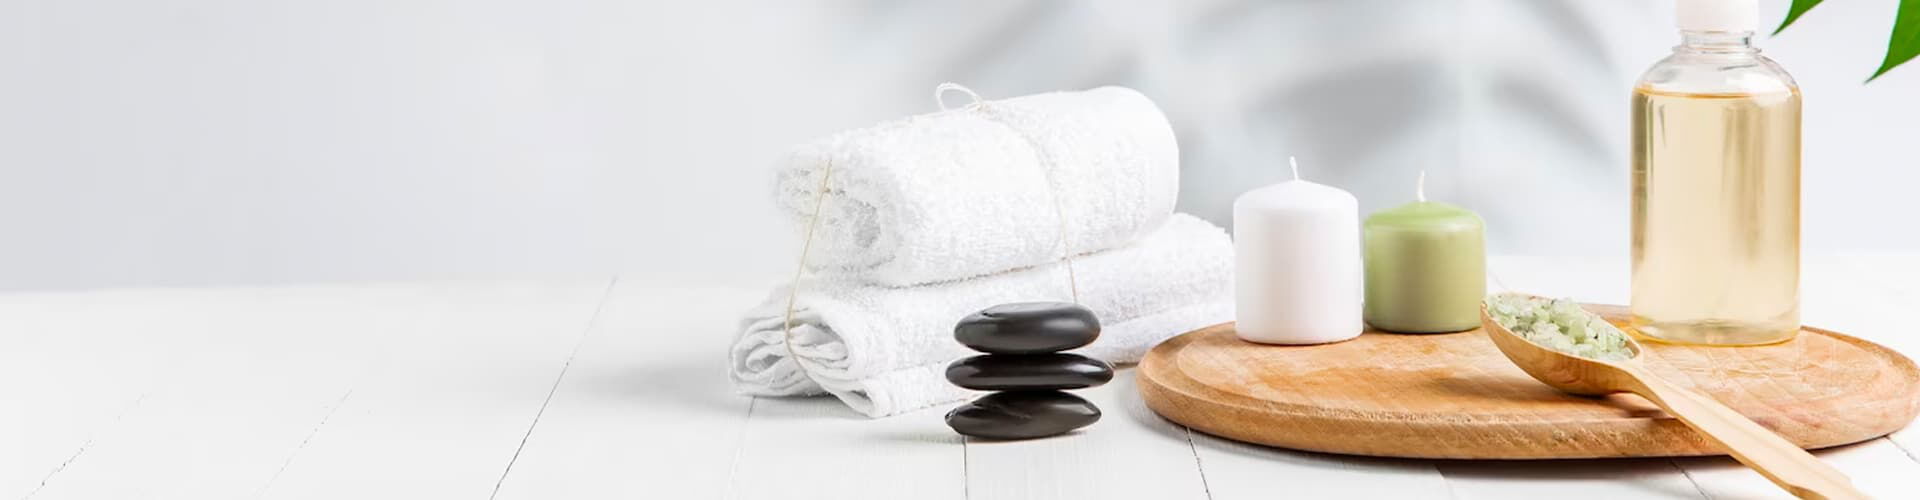 Wax-Store aus Recklinghausen, bietet wohltuende Wellness-Massagen an - lassen Sie sich verwöhnen.